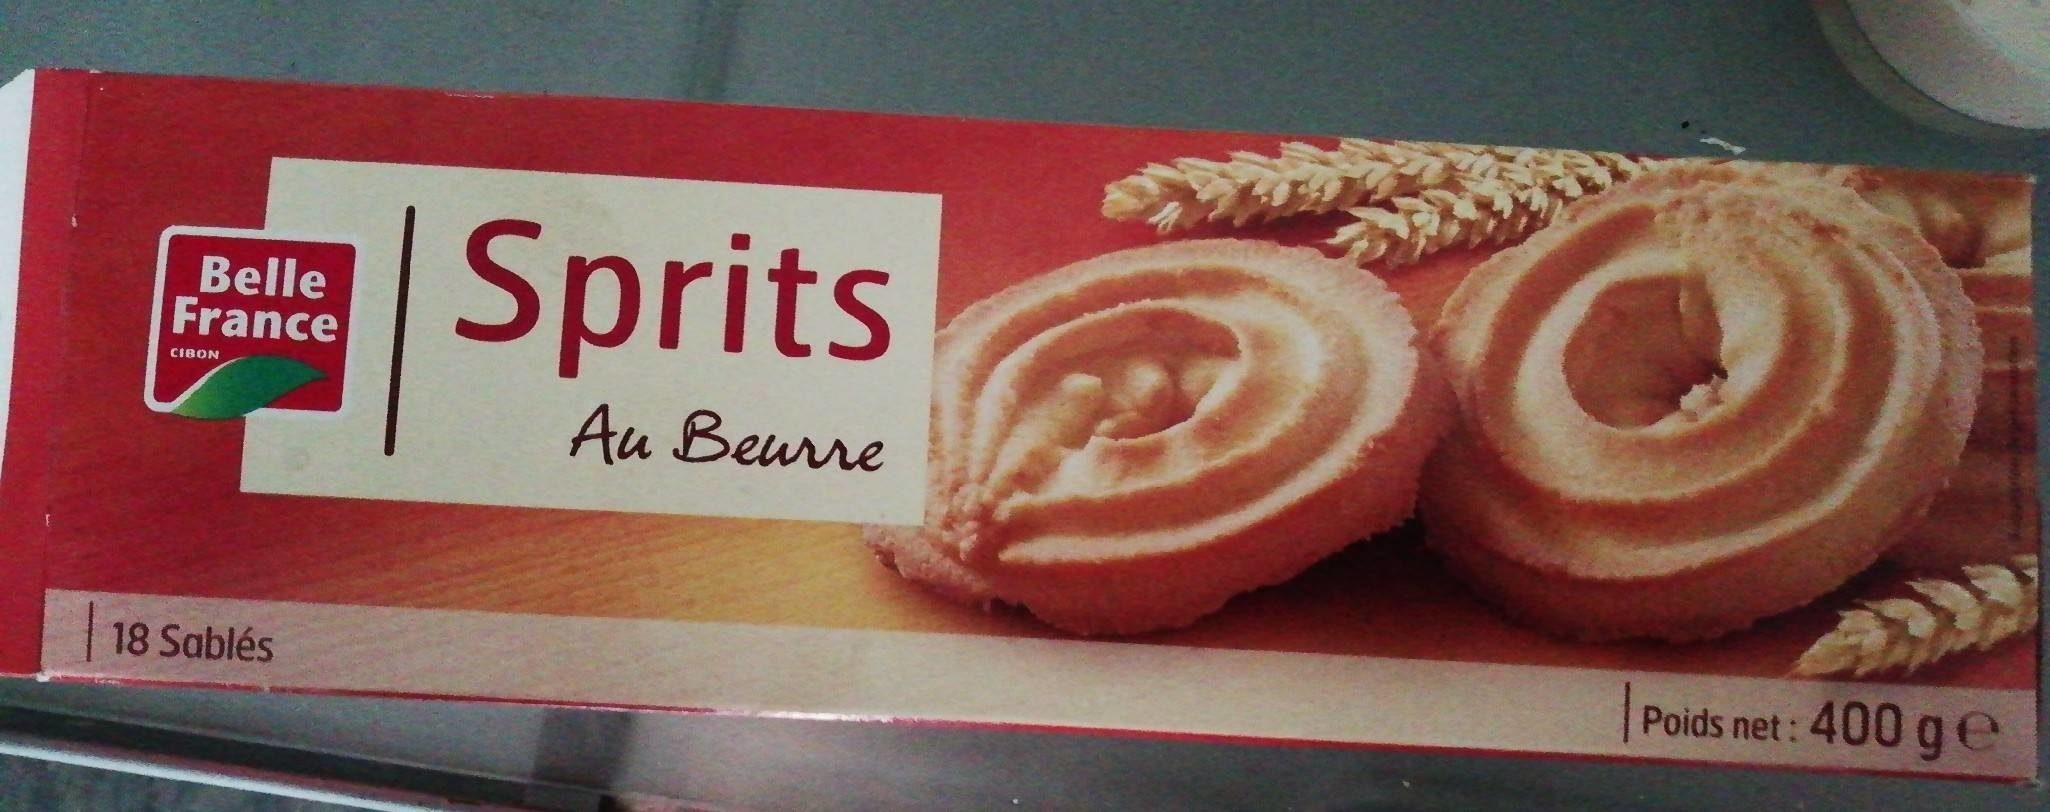 Sprits au beurre - Product - fr